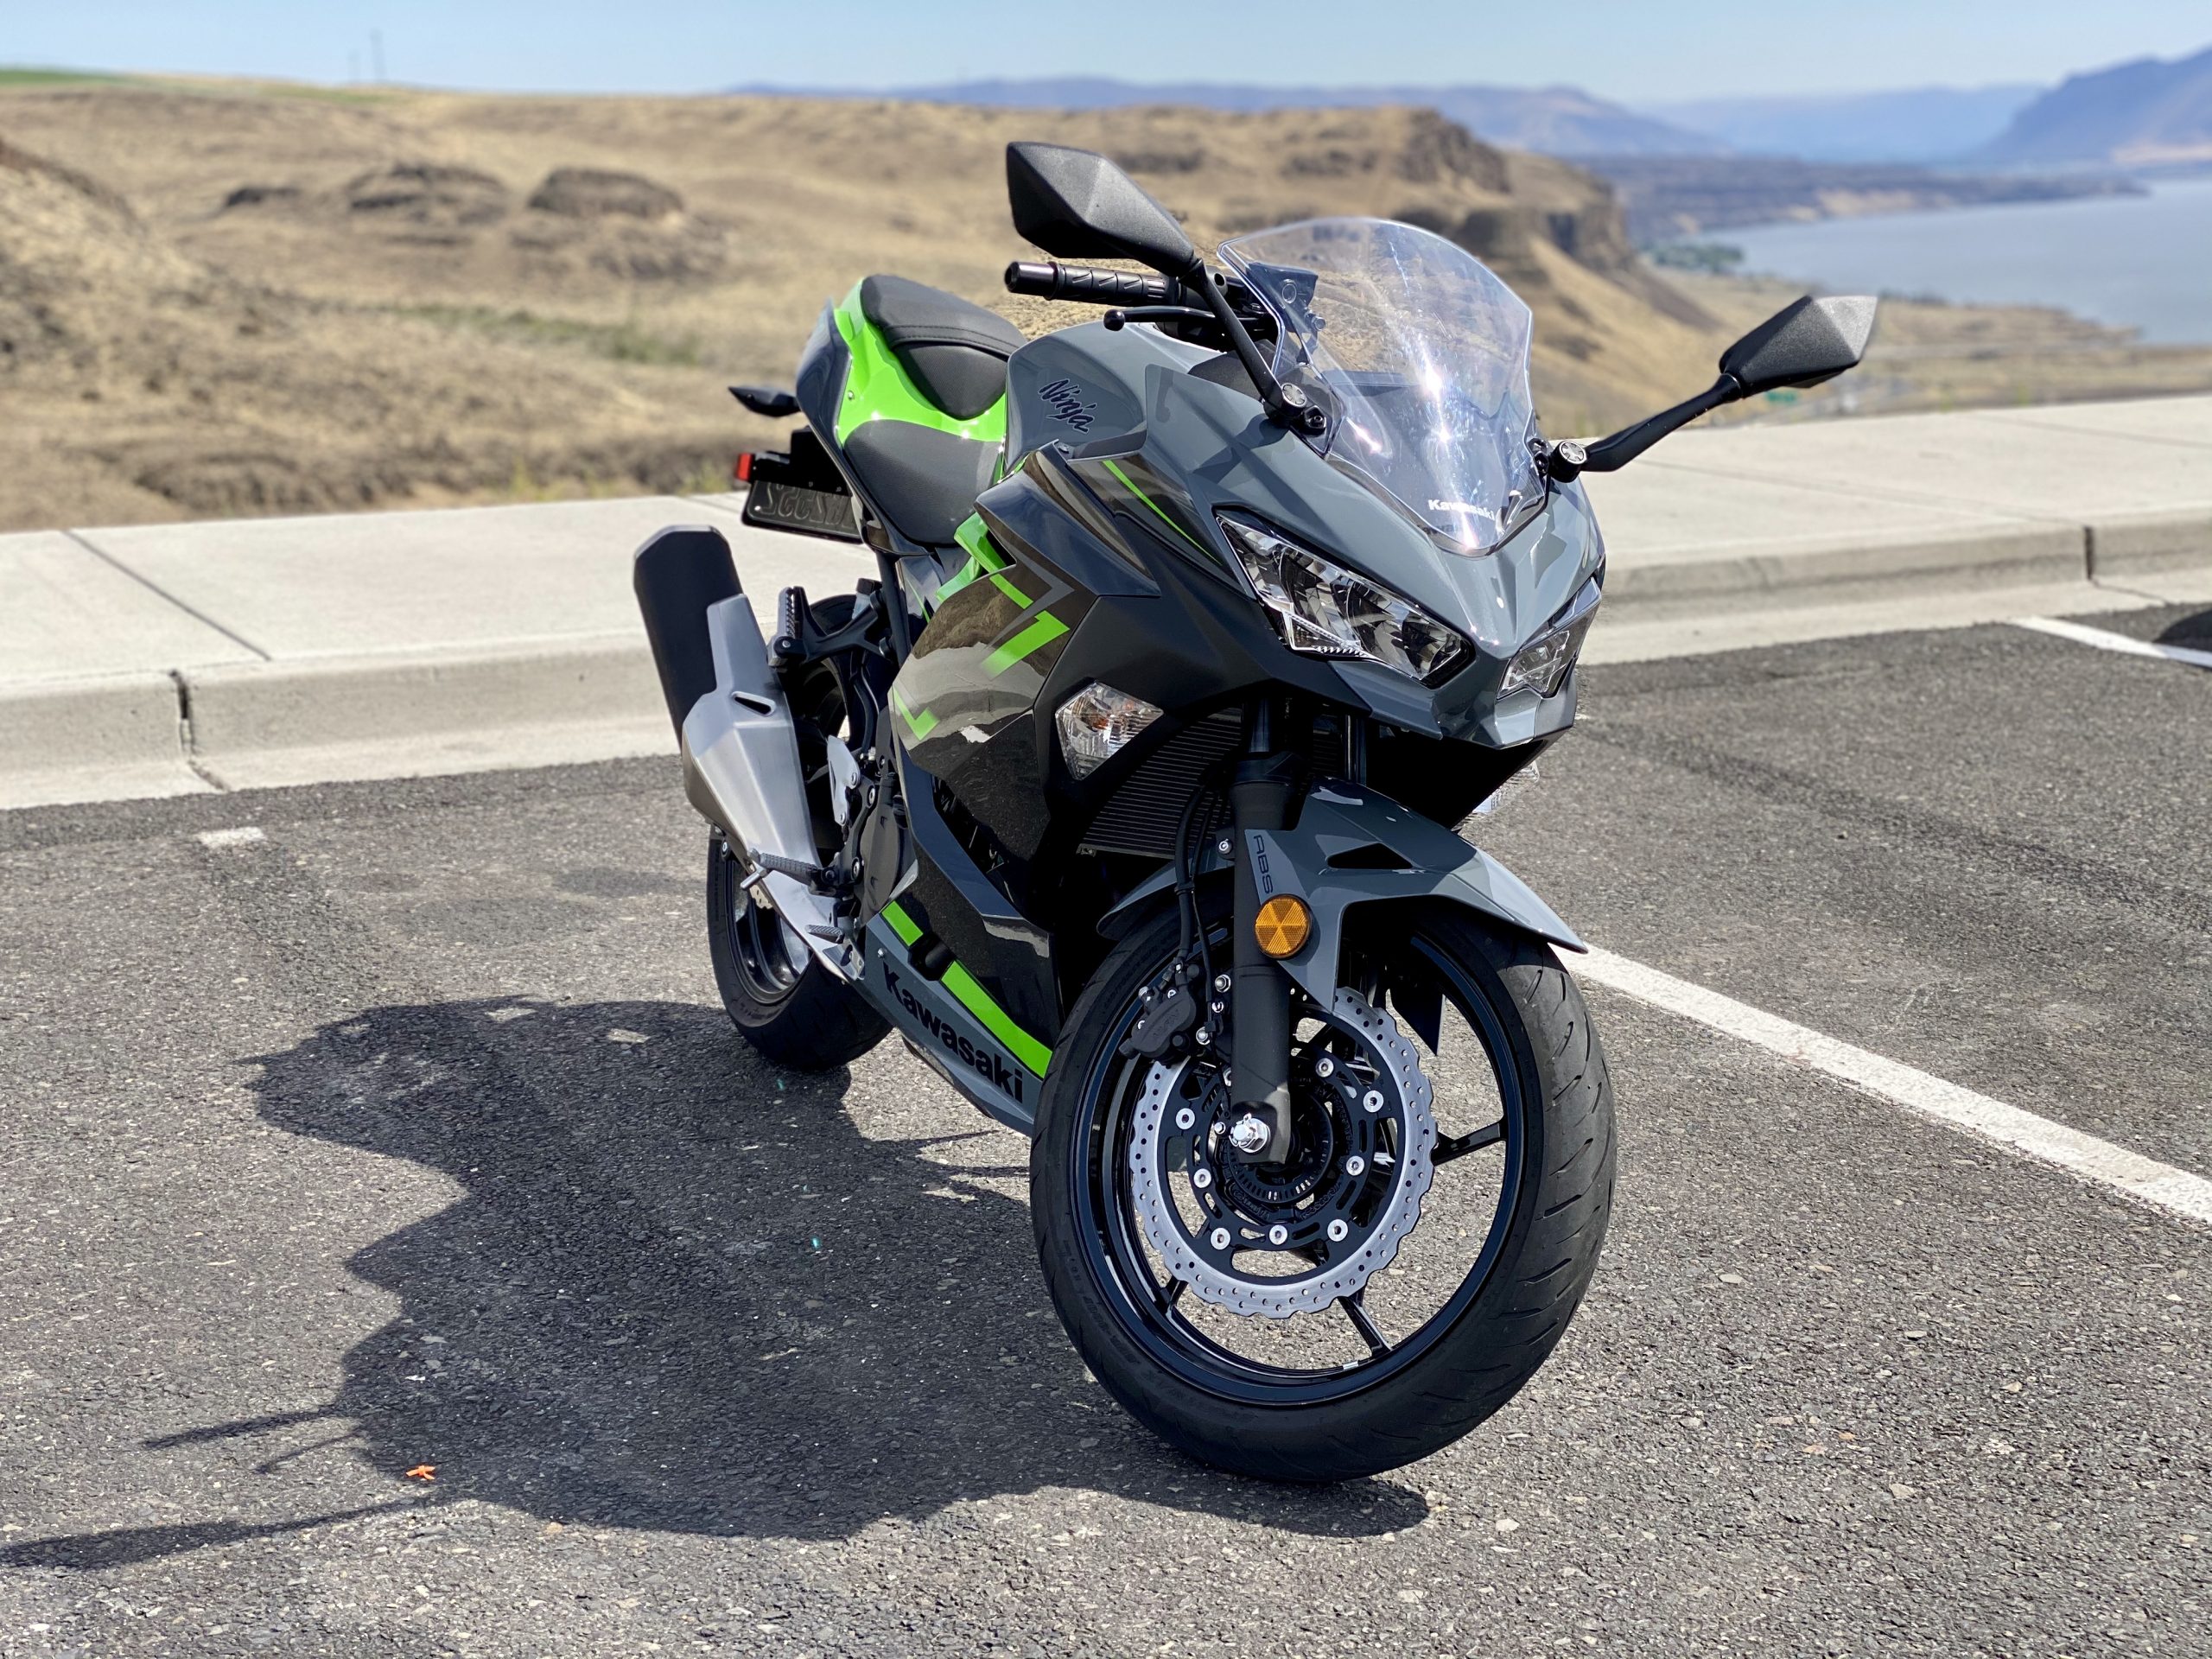 Kawasaki Ninja 400 ABS review after a year of ownership